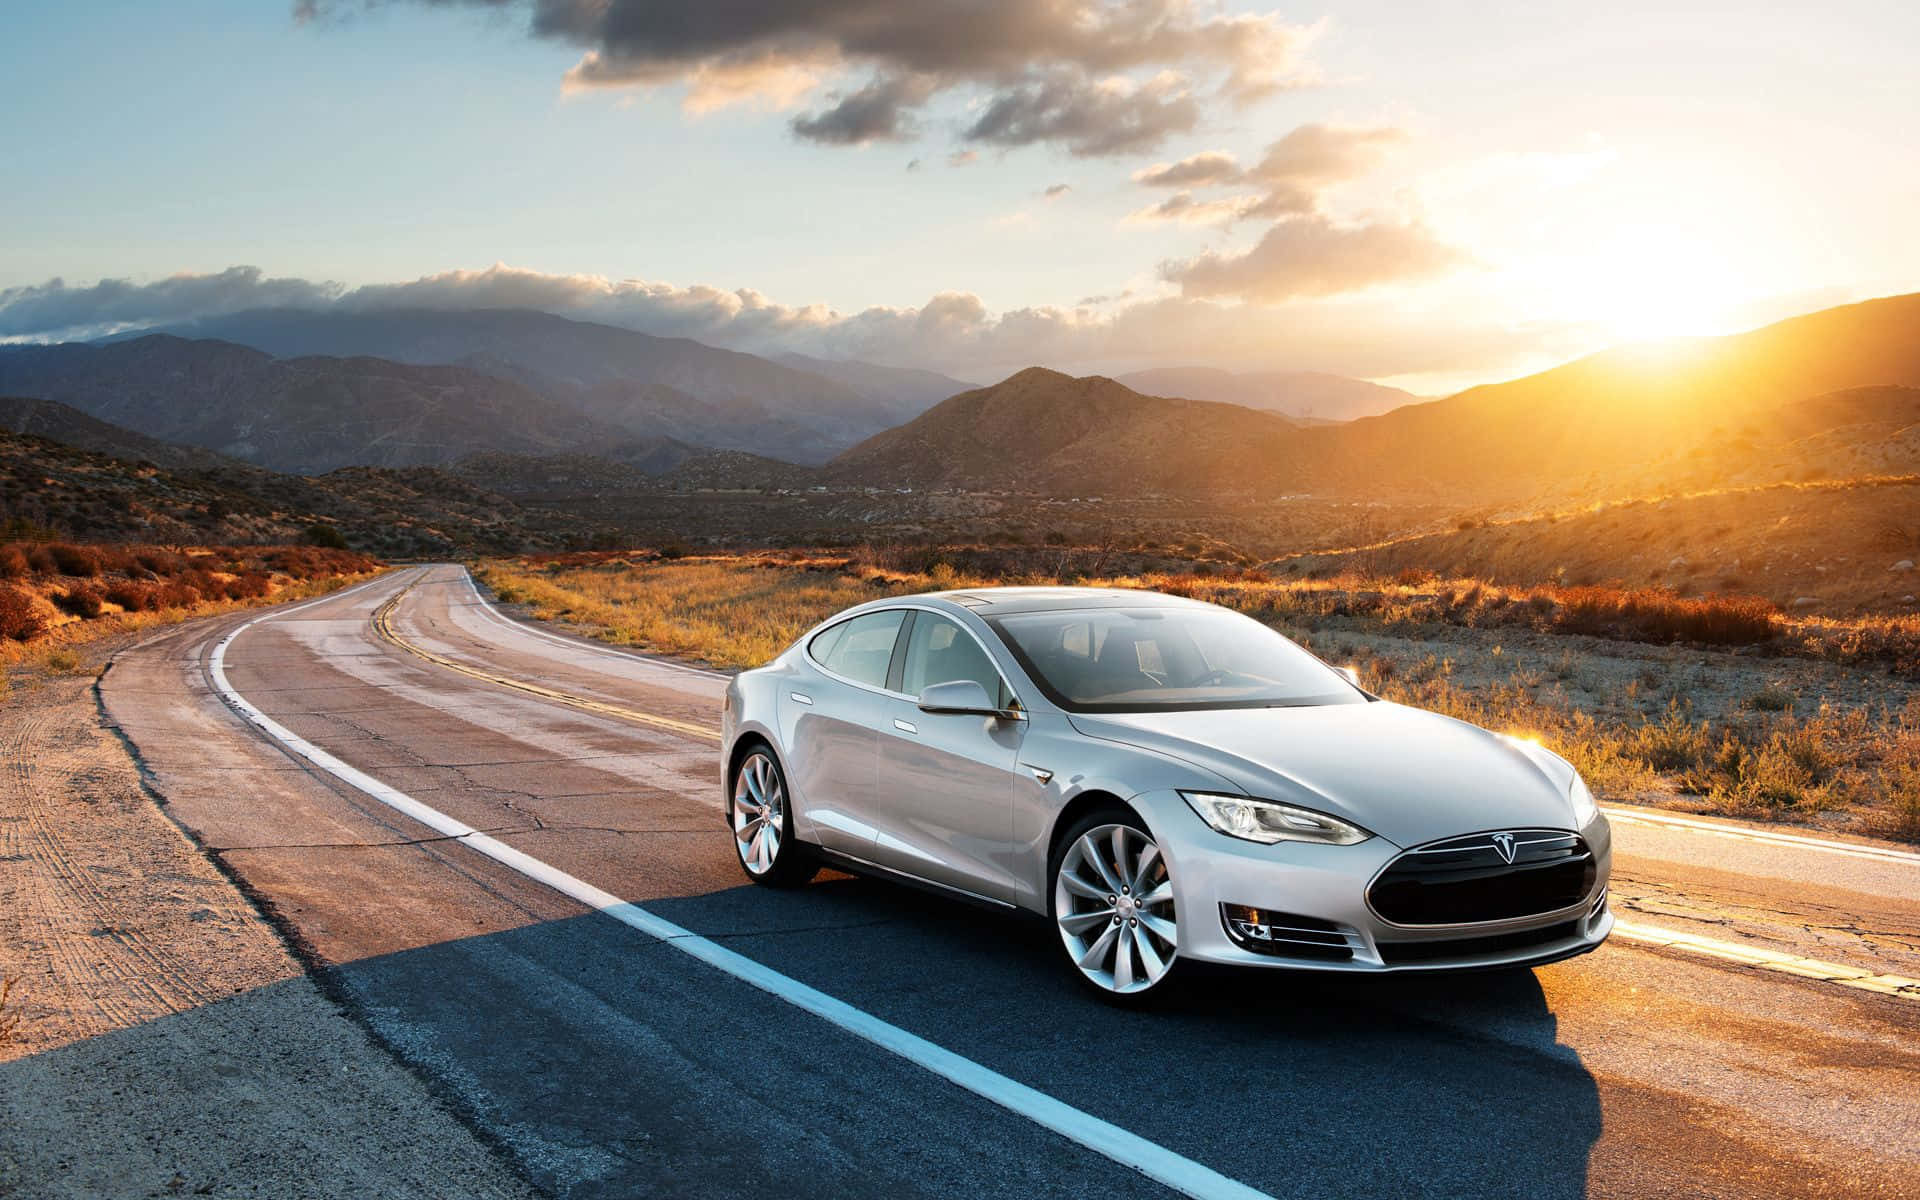 Teslamodel S Che Percorre Una Strada Nel Deserto.